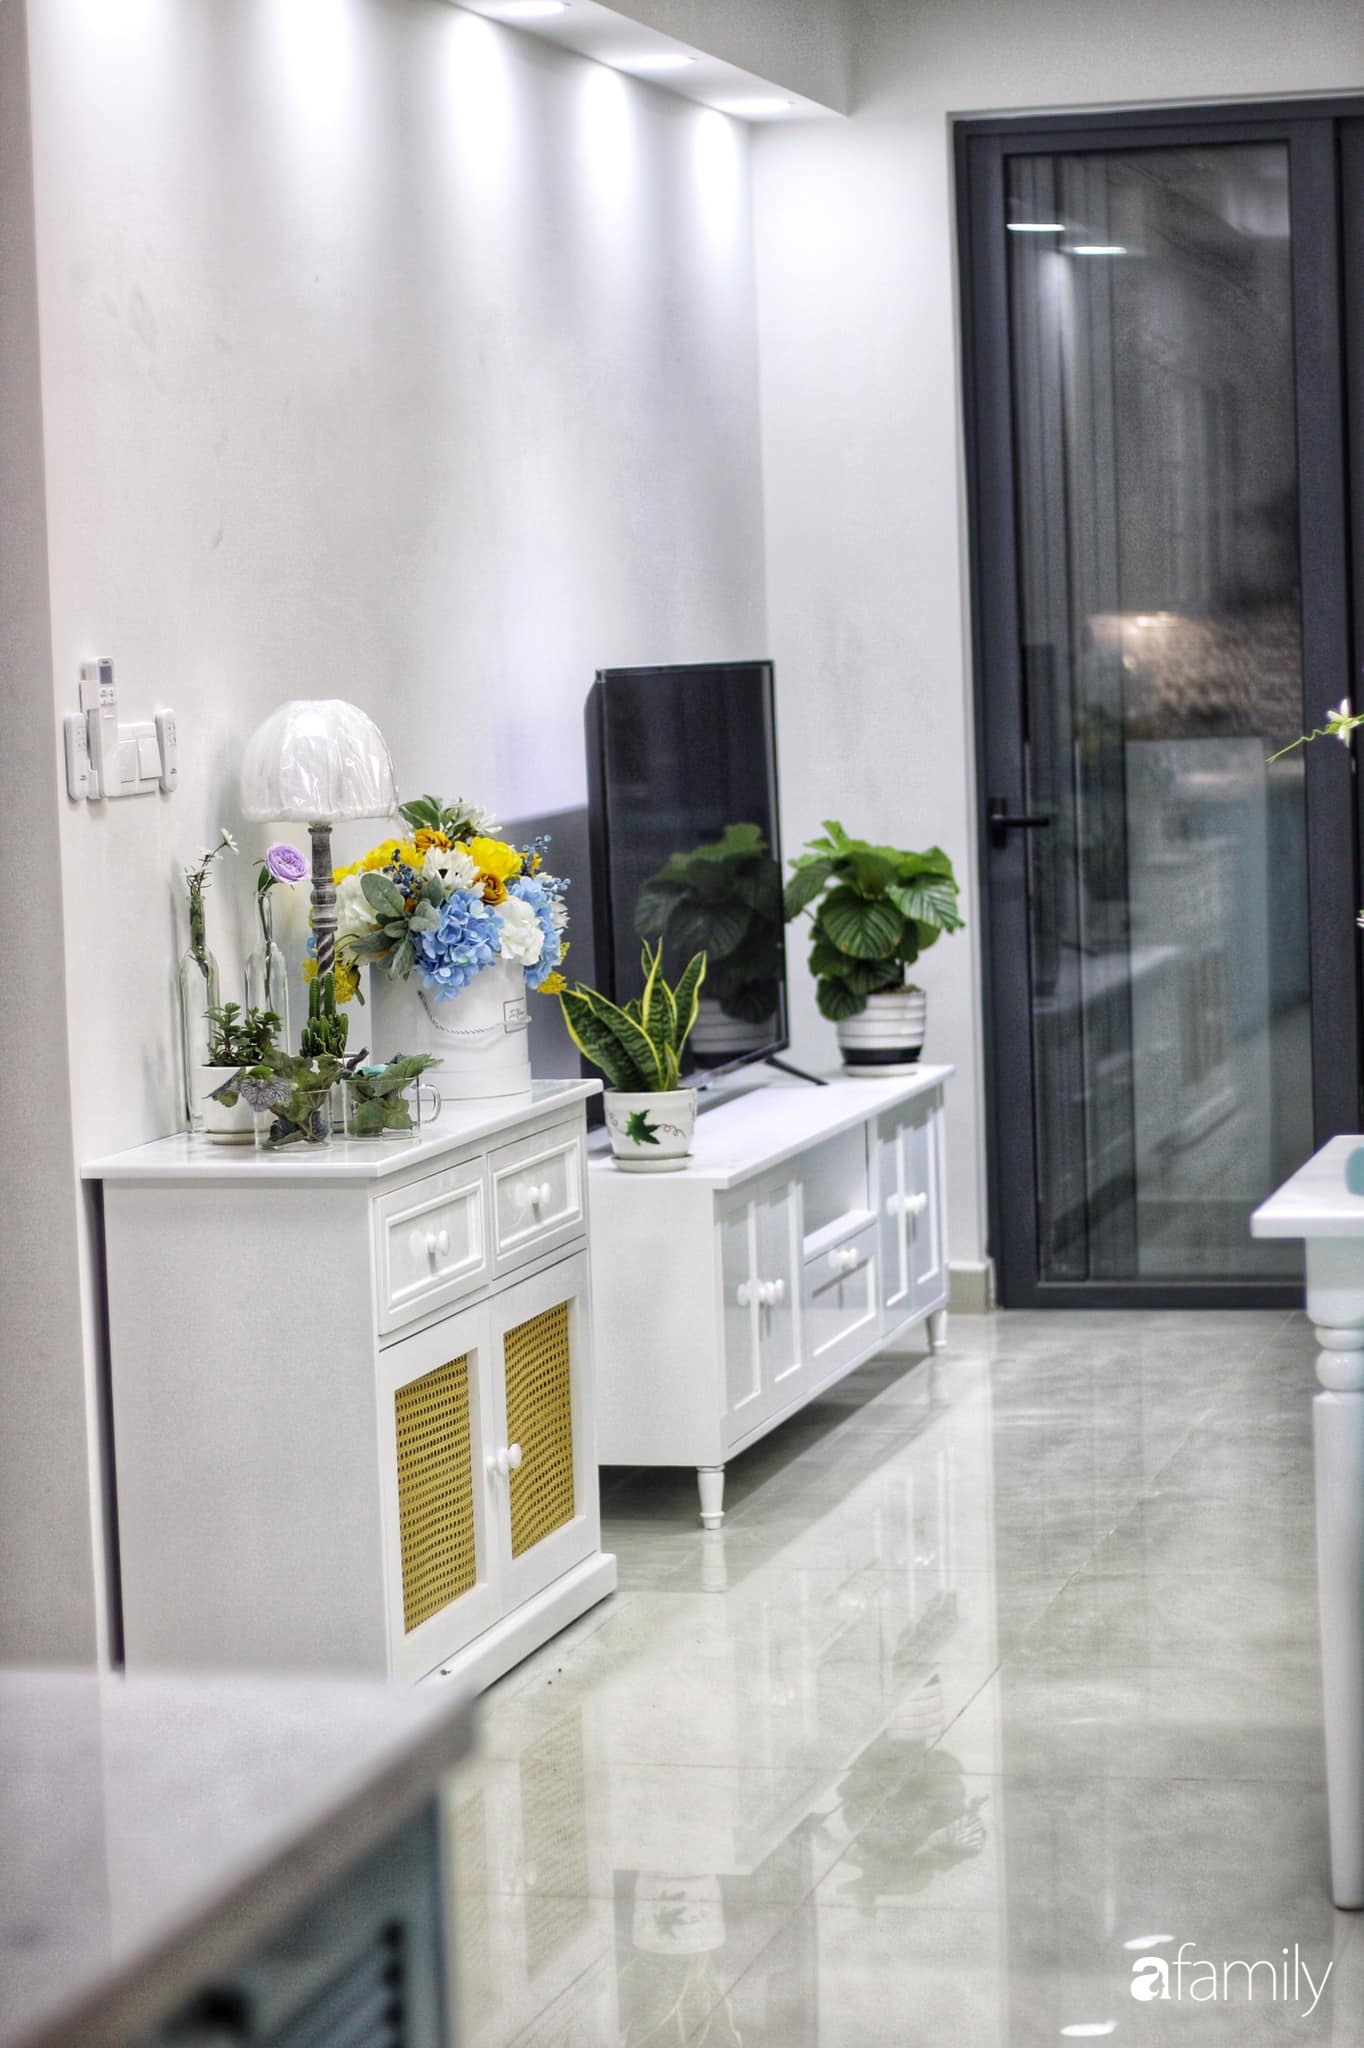 Căn hộ 71m² đẹp nhẹ nhàng, xinh yêu với điểm nhấn màu xanh bạc hà có chi phí hoàn thiện 200 triệu đồng ở Sài Gòn - Ảnh 8.